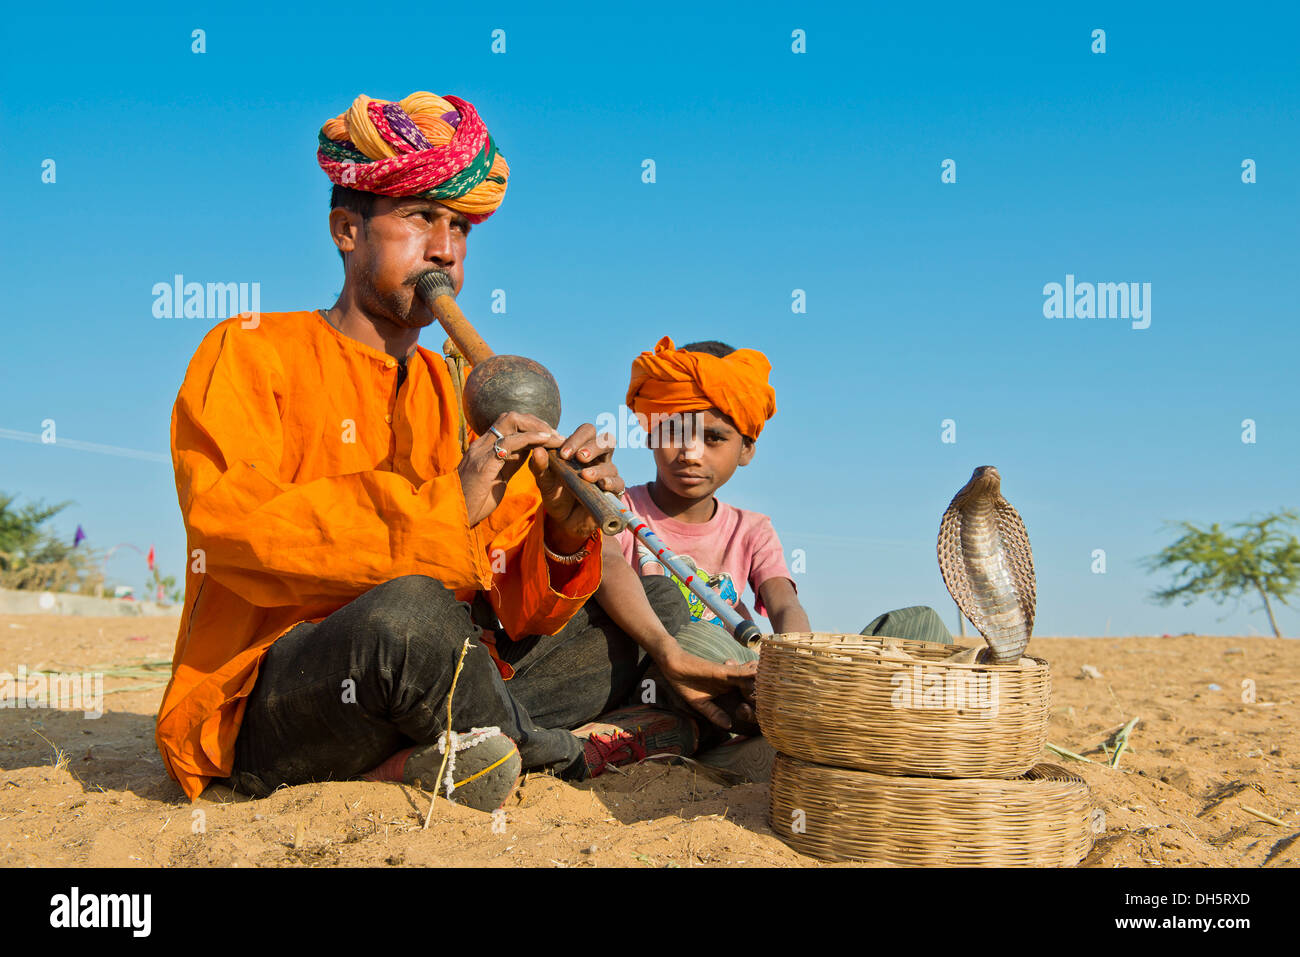 Snake Charmer, Rajasthani, mit bunten Turban spielt Querflöte, Cobra oder Naja Wicklung aus einem Korb vor ihm Stockfoto